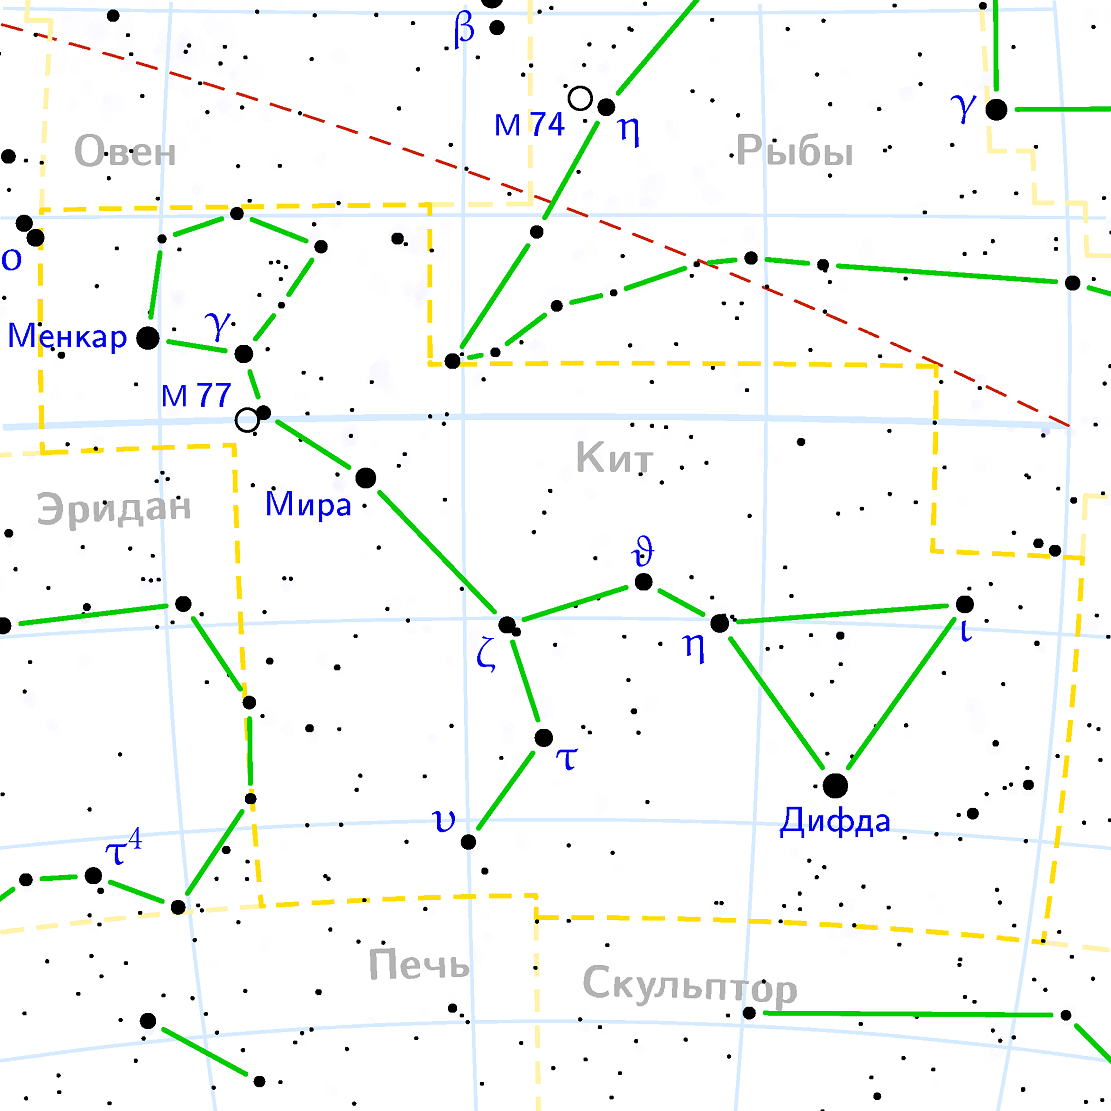 Position de la galaxie 77 dans la constellation de Kita